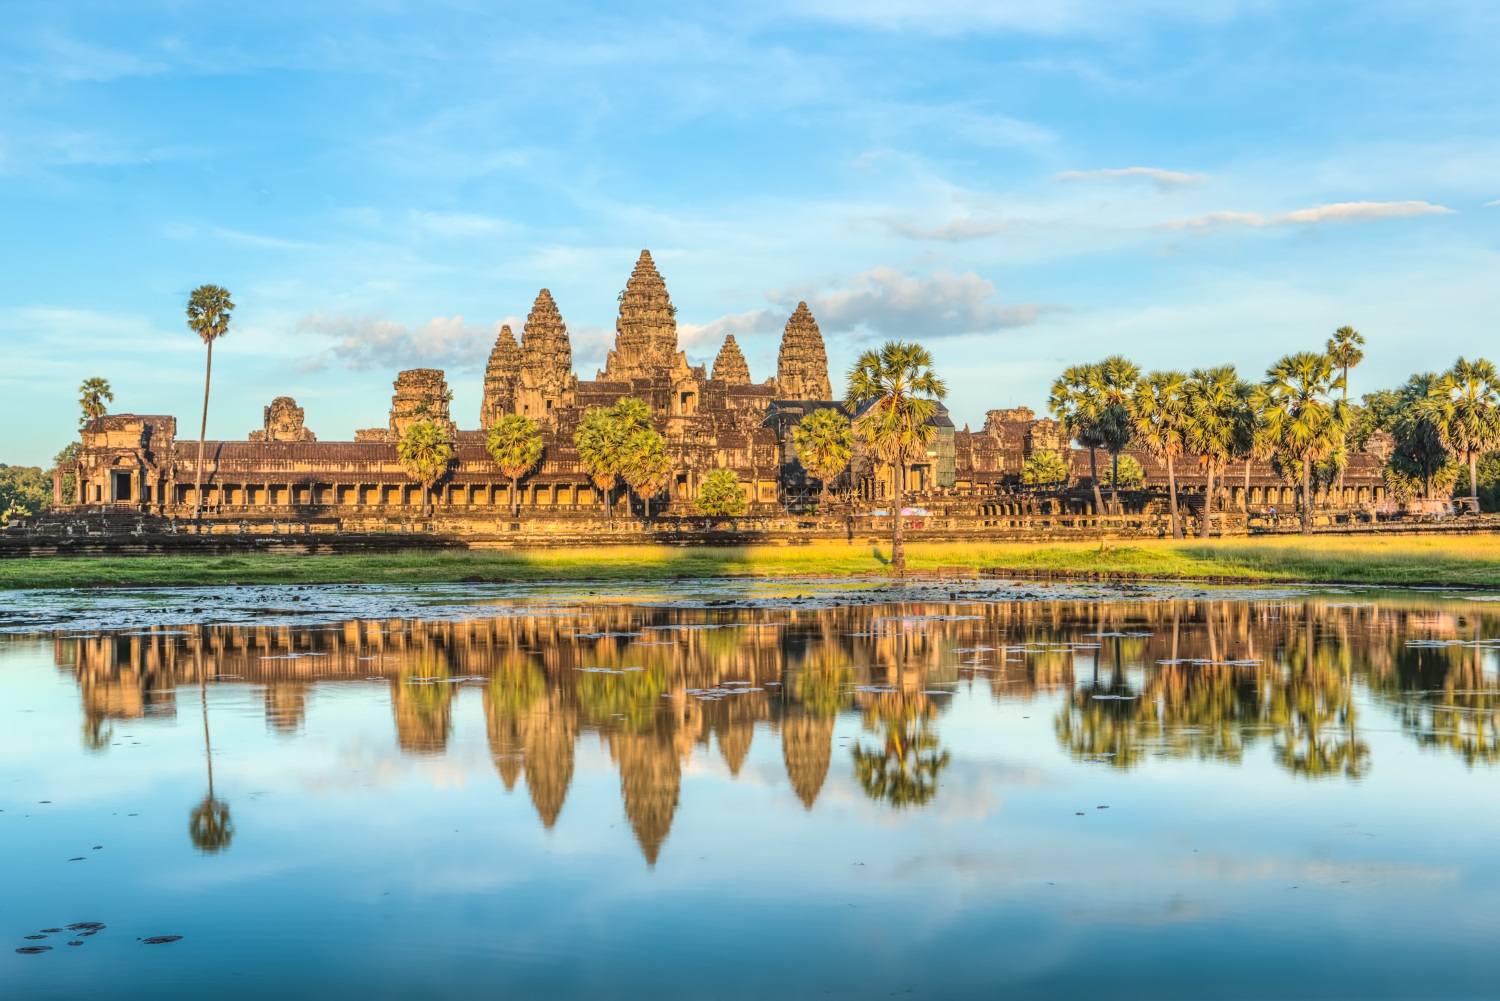 Angkor Wat and its reflection